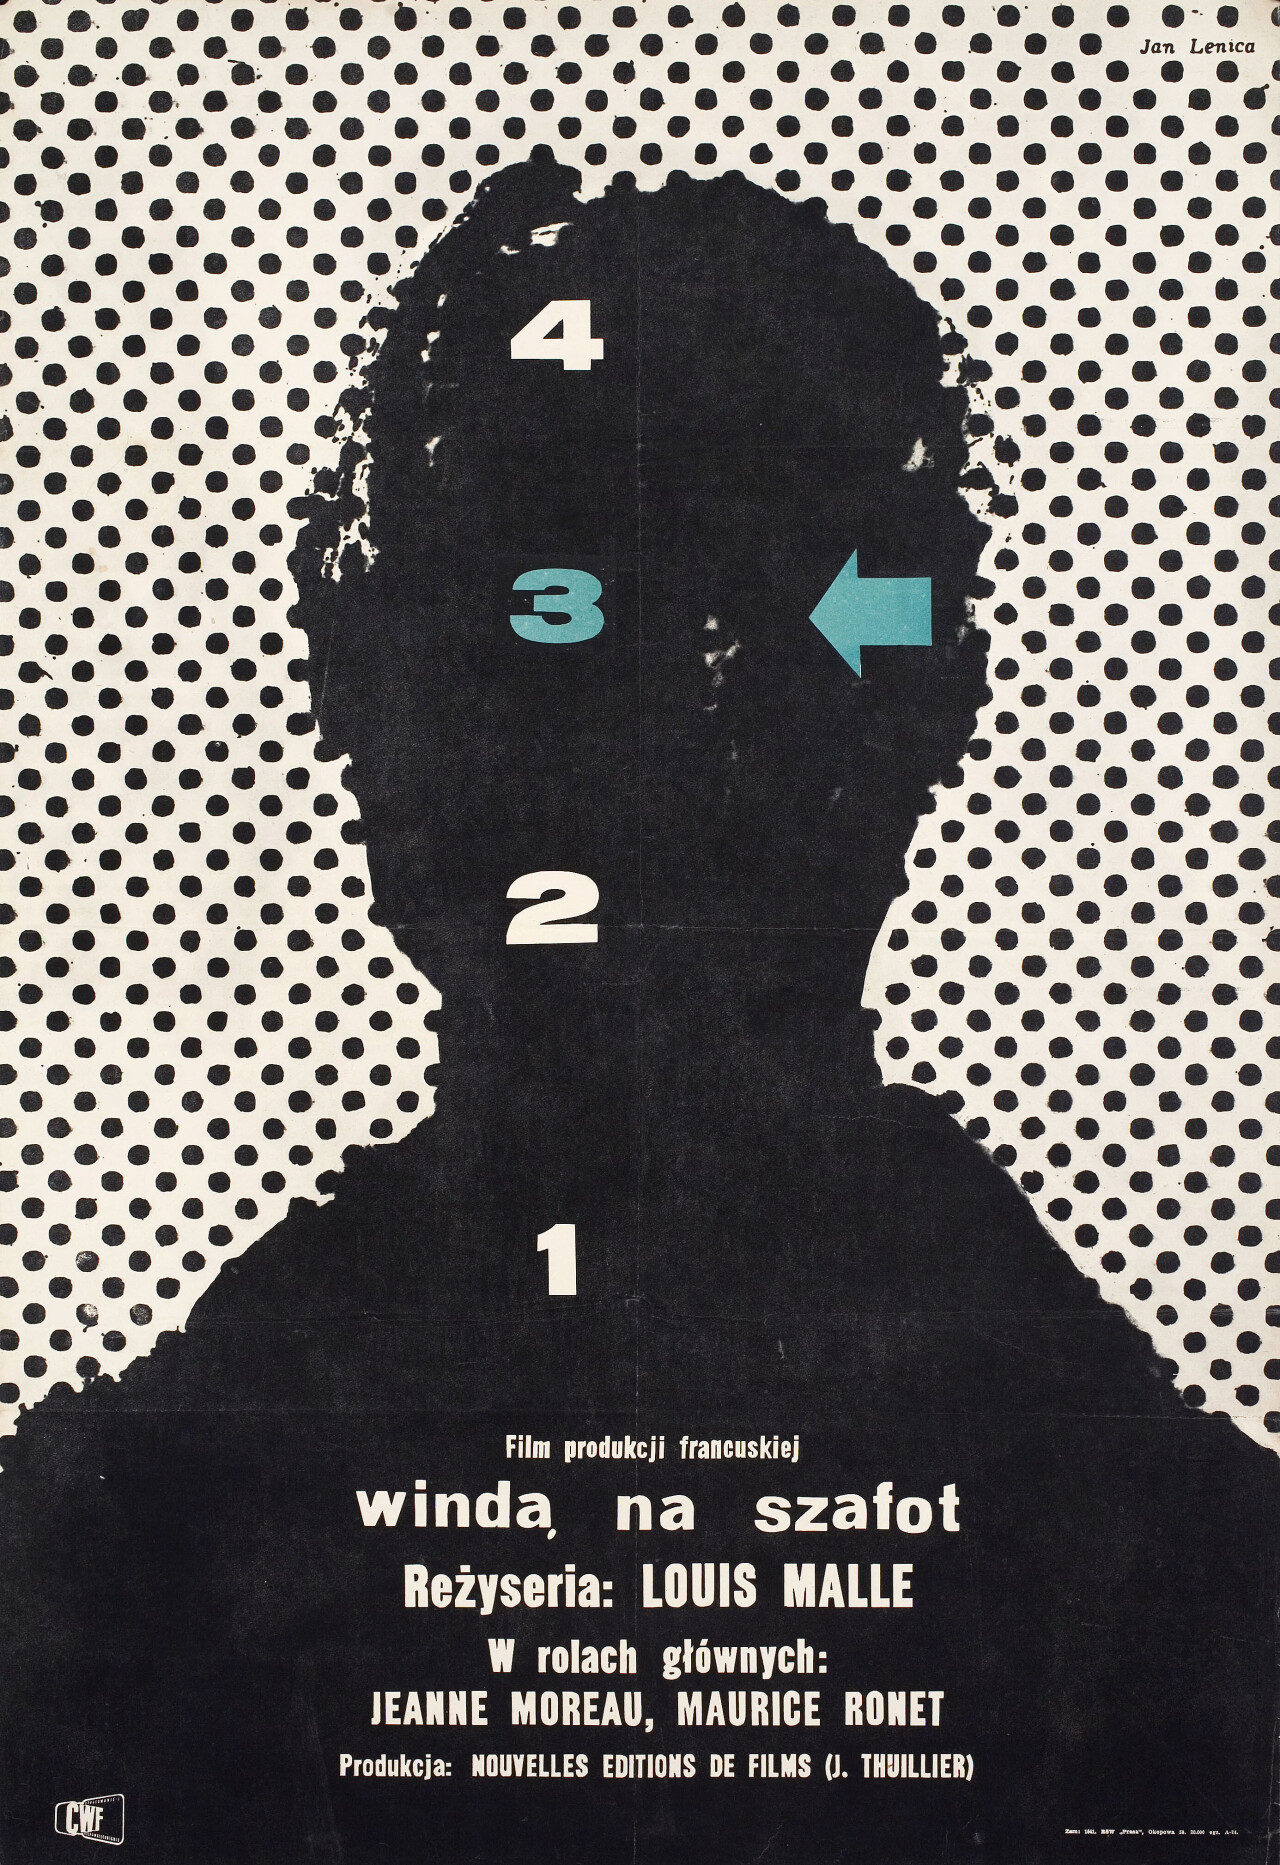 Лифт на эшафот (Elevator to the Gallows, 1958), режиссёр Луи Малль, польский постер к фильму, автор Ян Леница (графический дизайн, 1957 год)